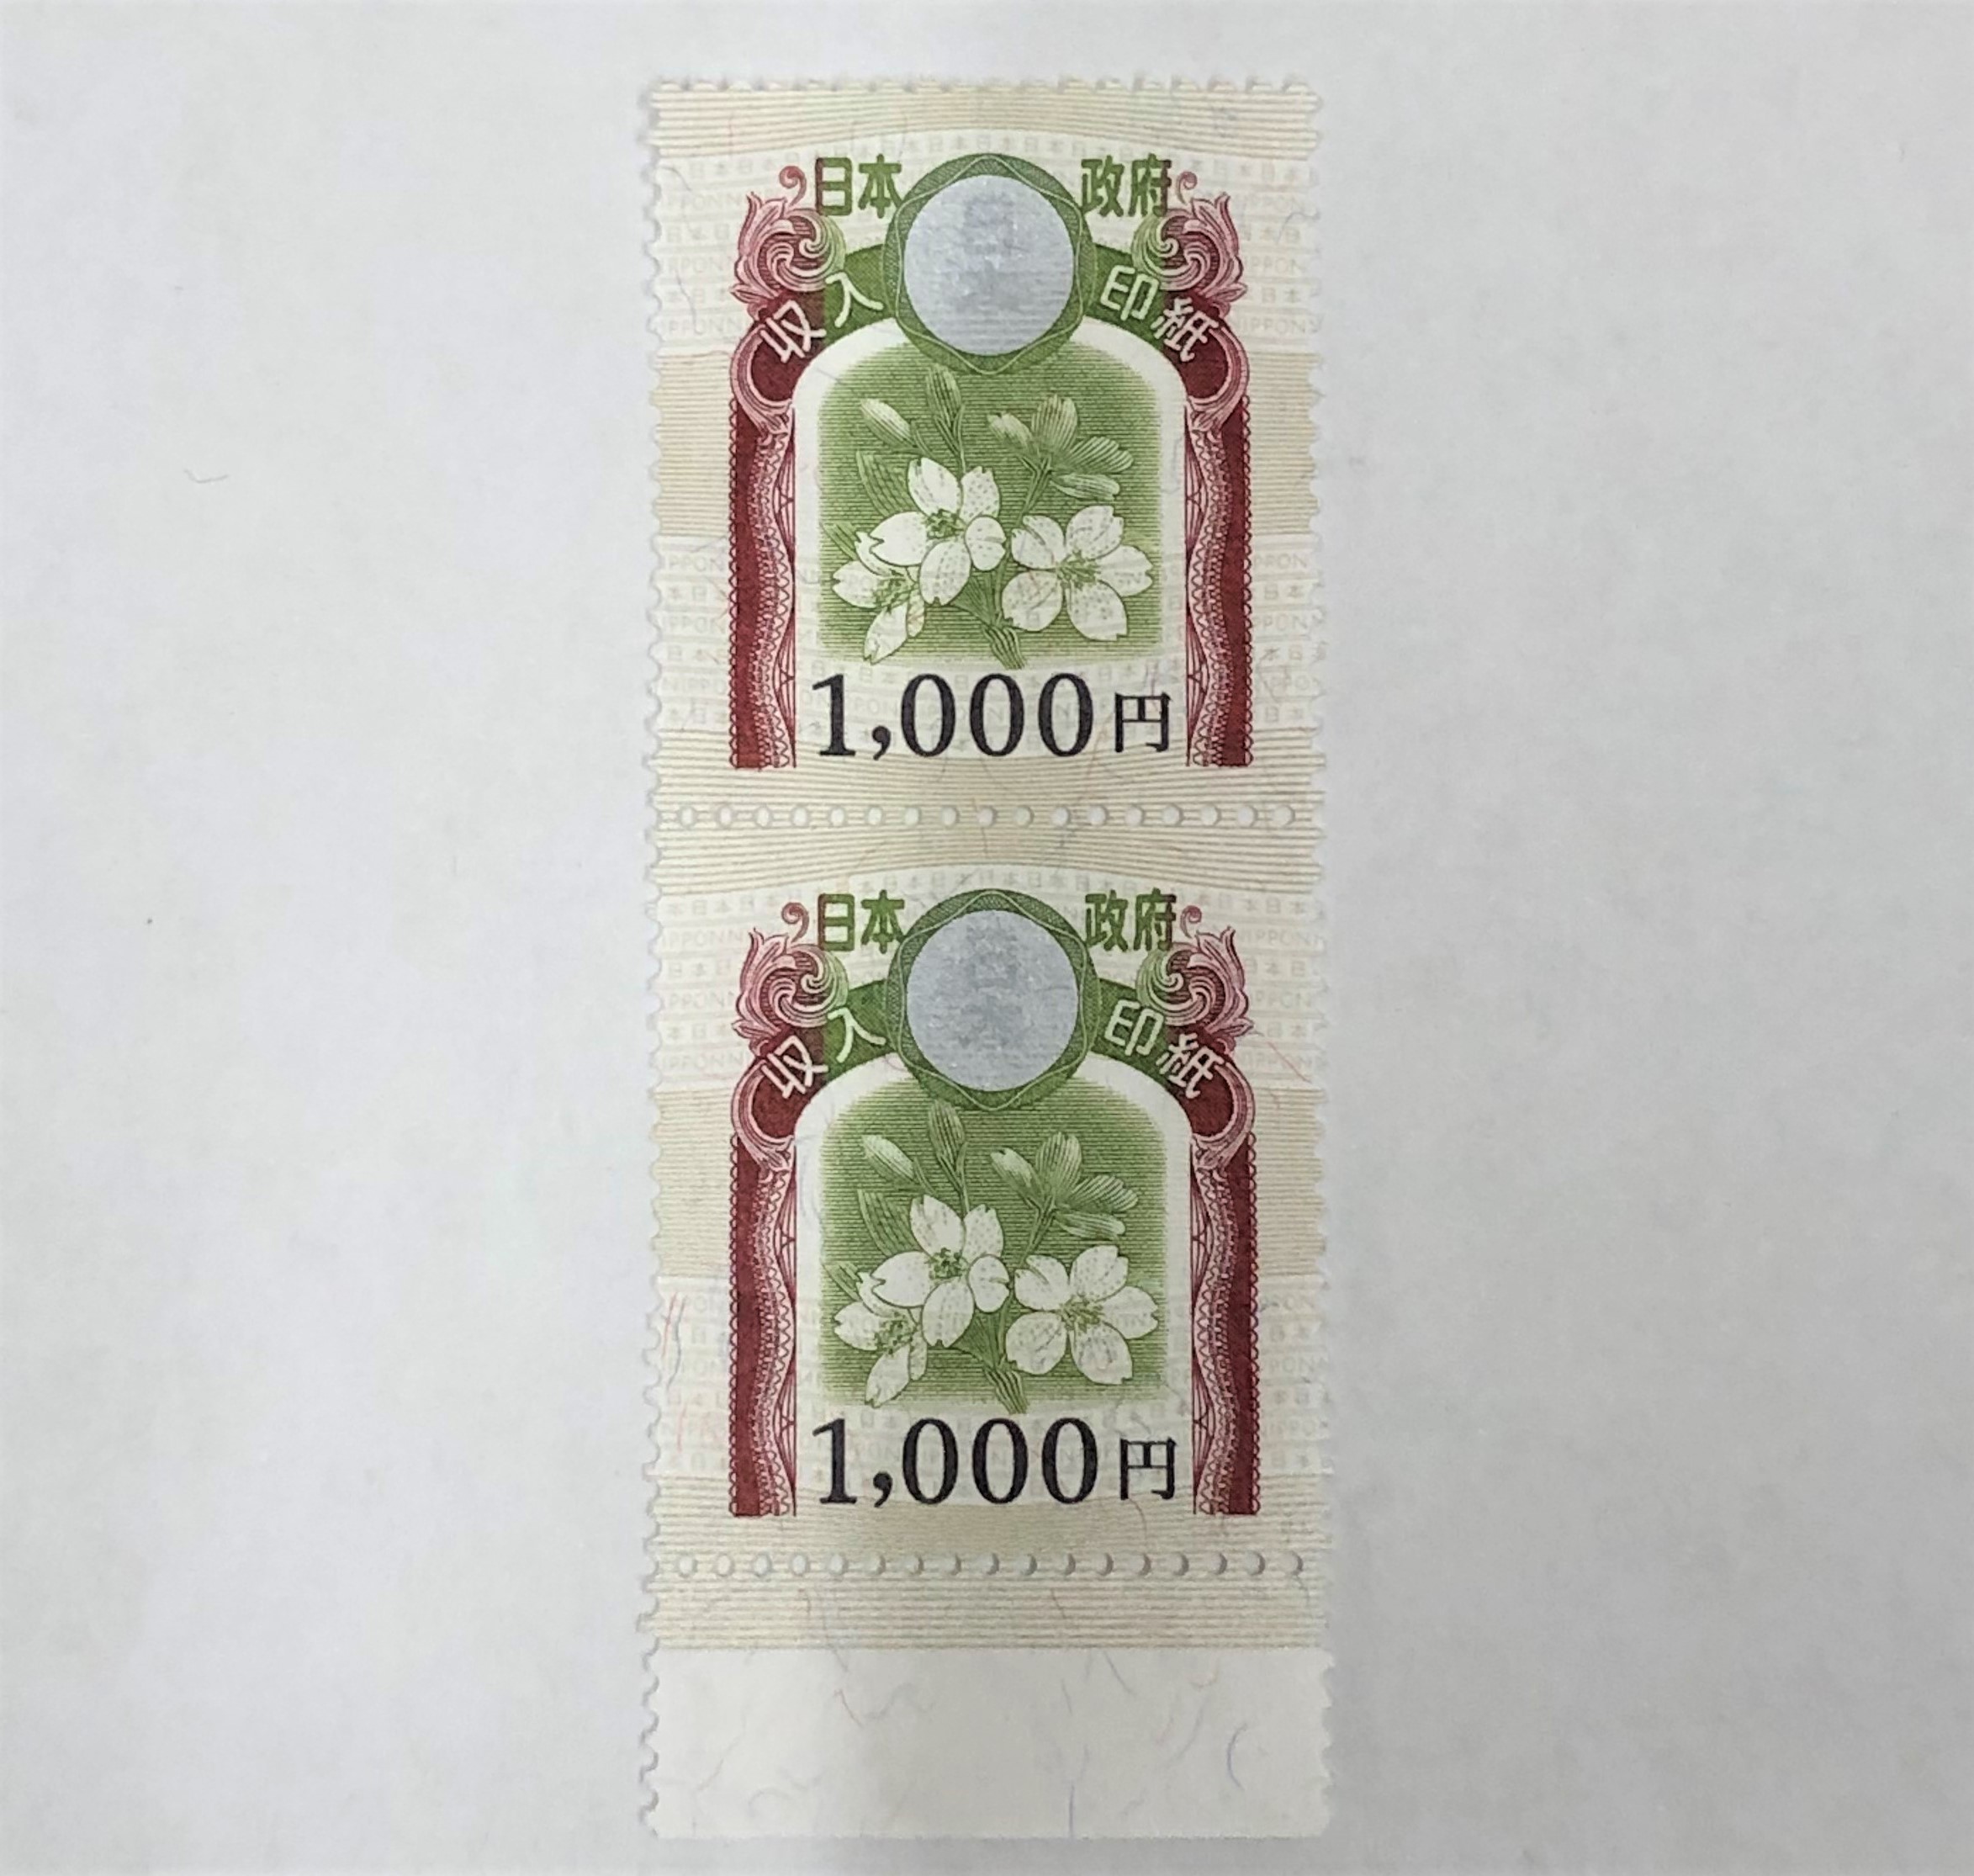 収入印紙 1000円